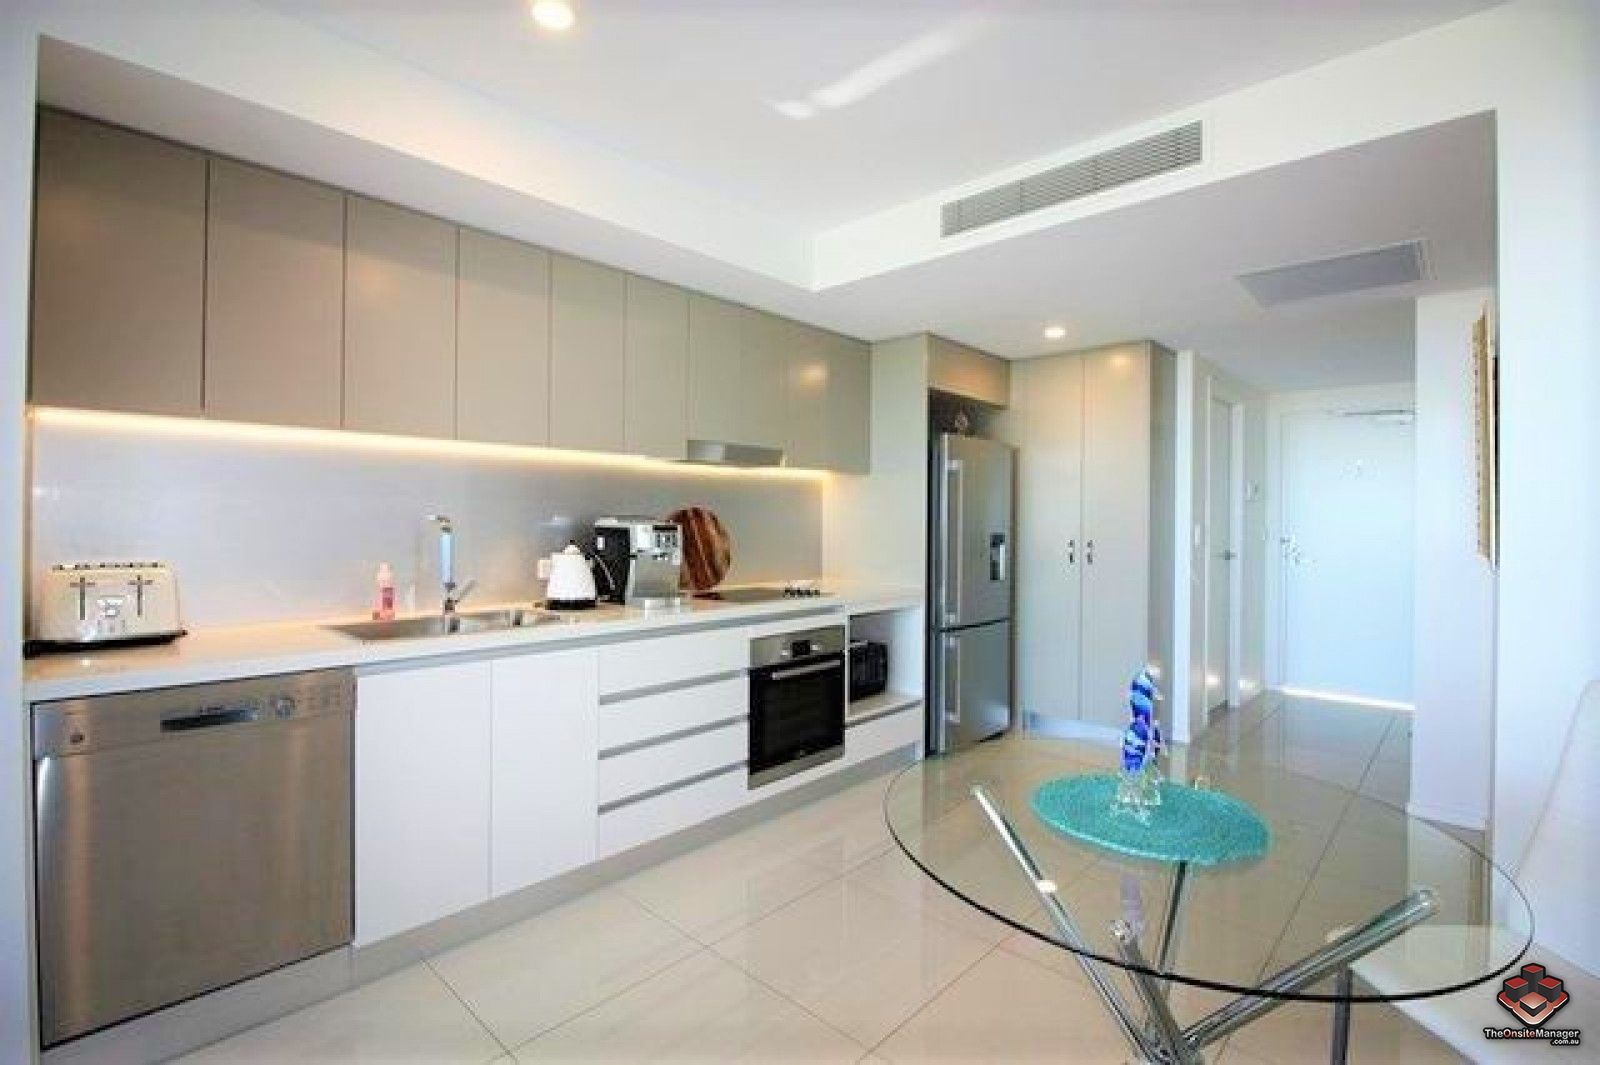 1 bedrooms Apartment / Unit / Flat in L62/45 Wellington Road EAST BRISBANE QLD, 4169